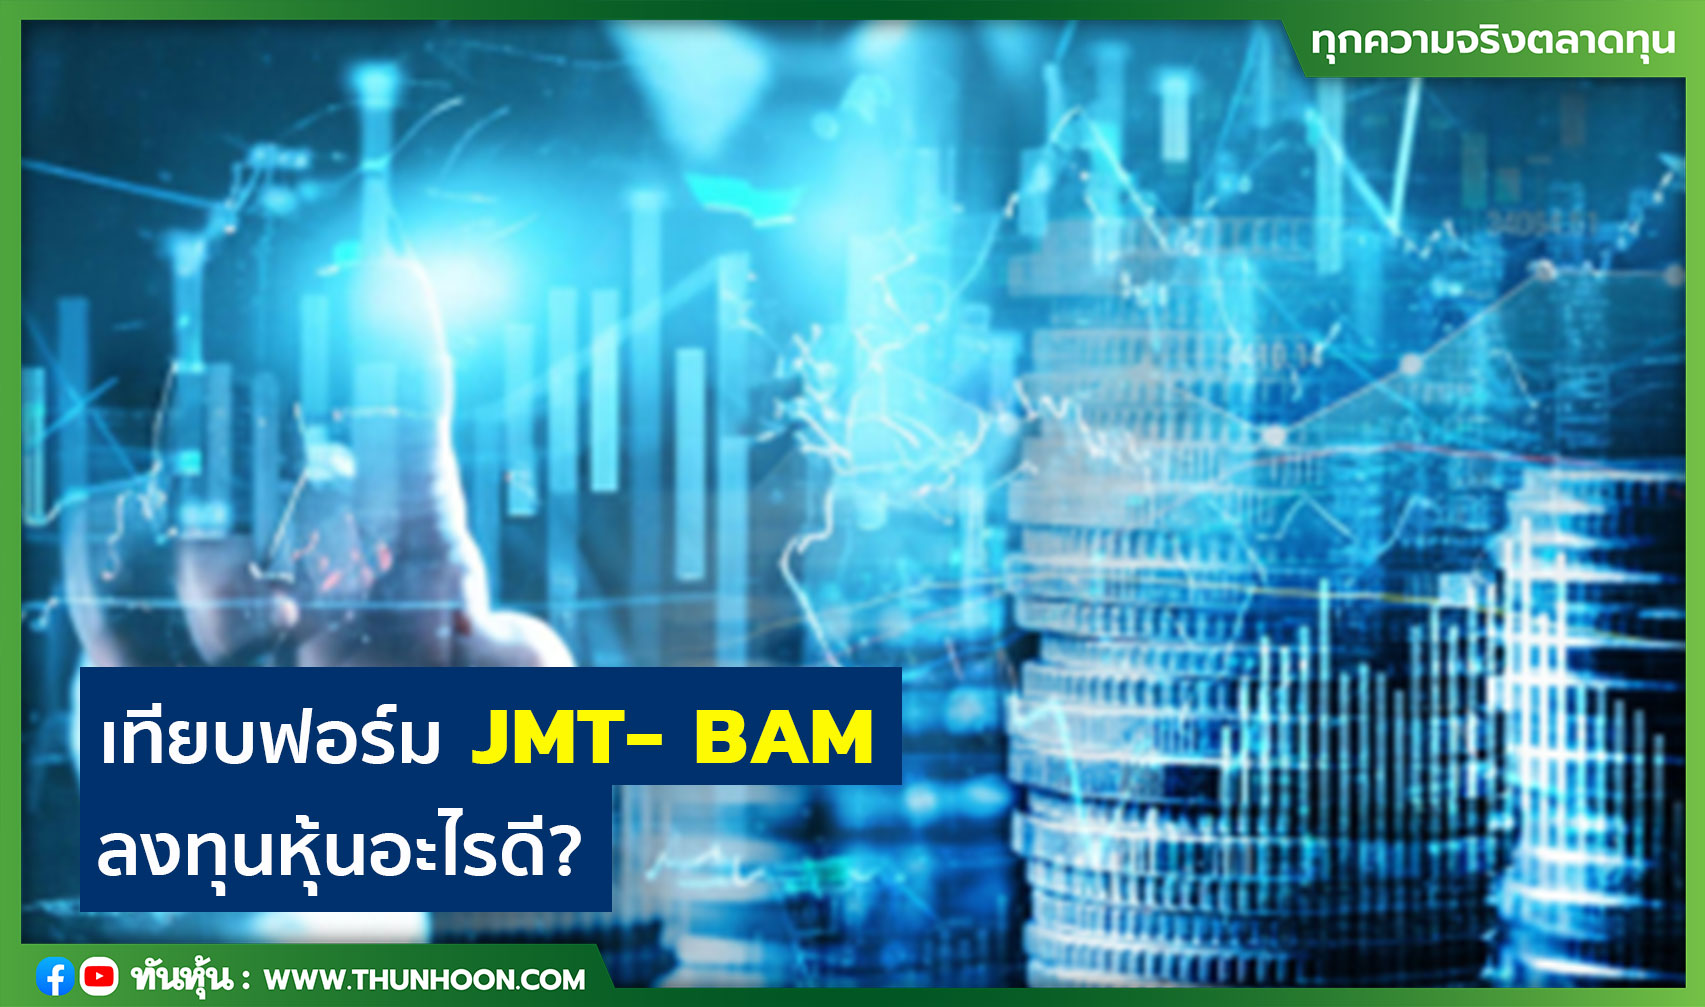 เทียบฟอร์ม JMT-BAM ลงทุนหุ้นอะไรดี?